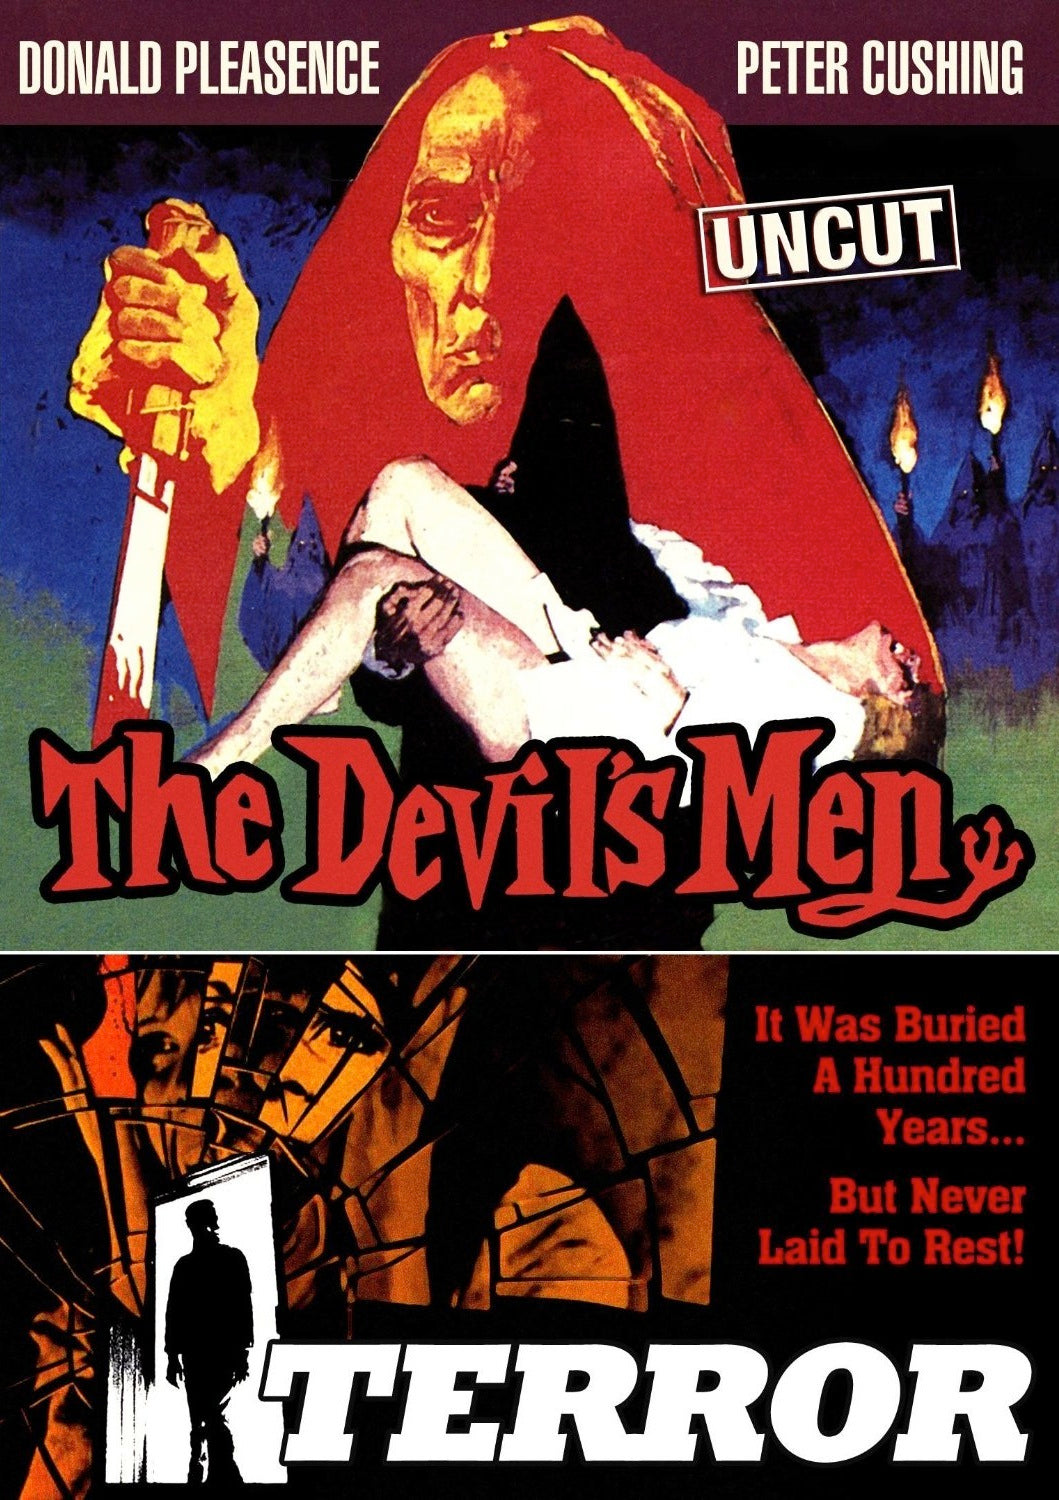 THE DEVIL'S MEN / TERROR DVD